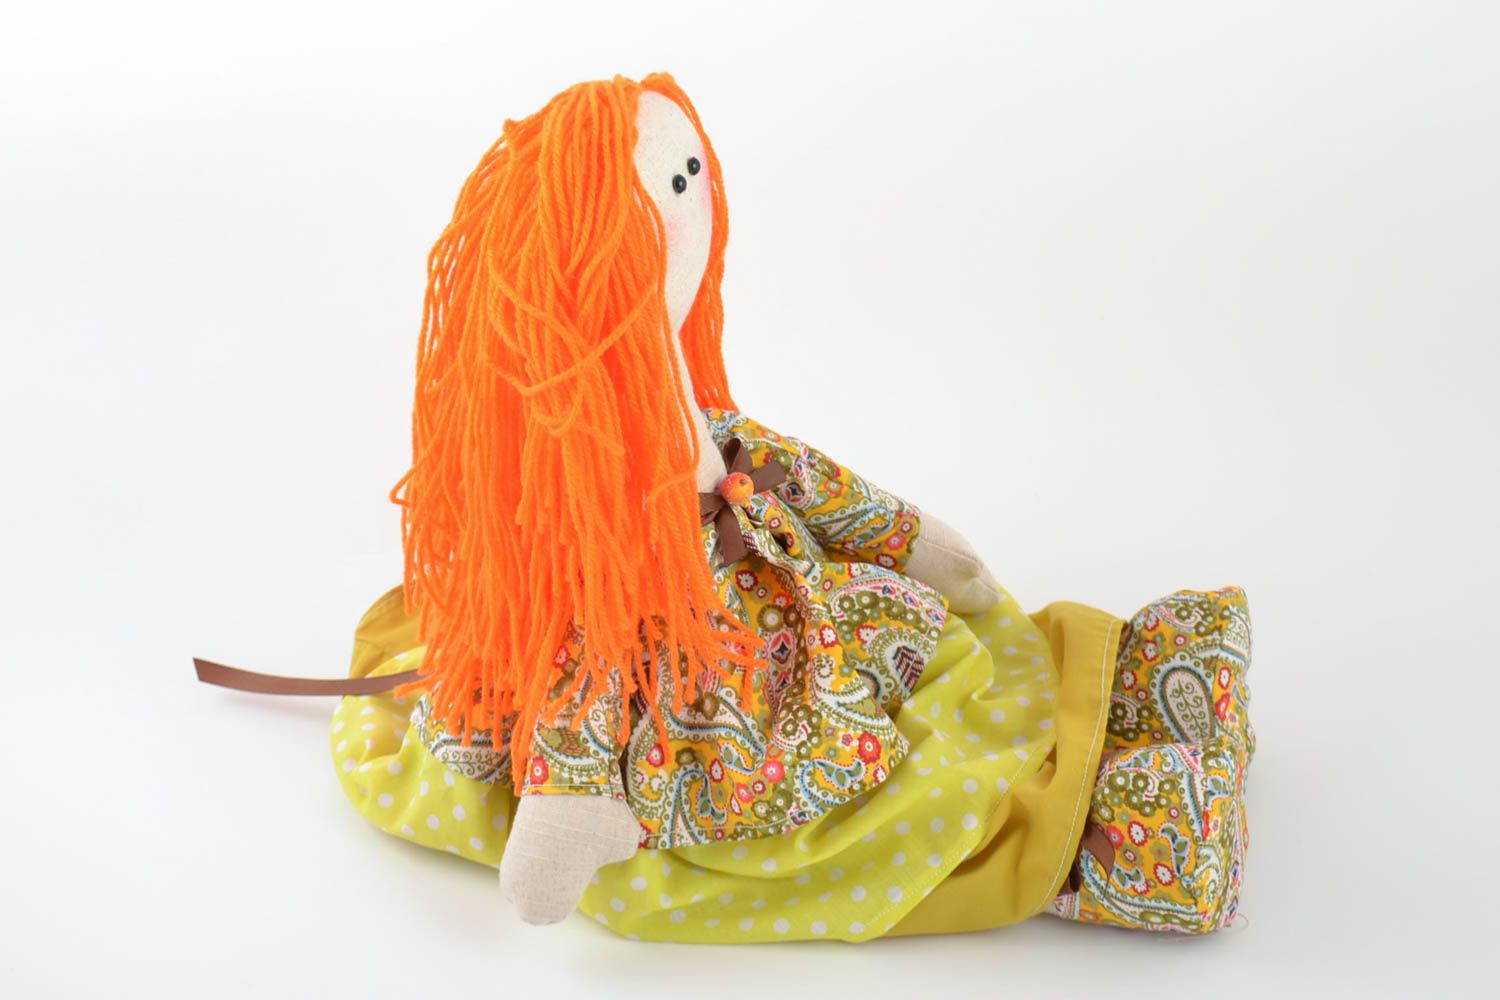 Авторская тканевая кукла с рыжими волосами мягкая игрушка ручной работы фото 2